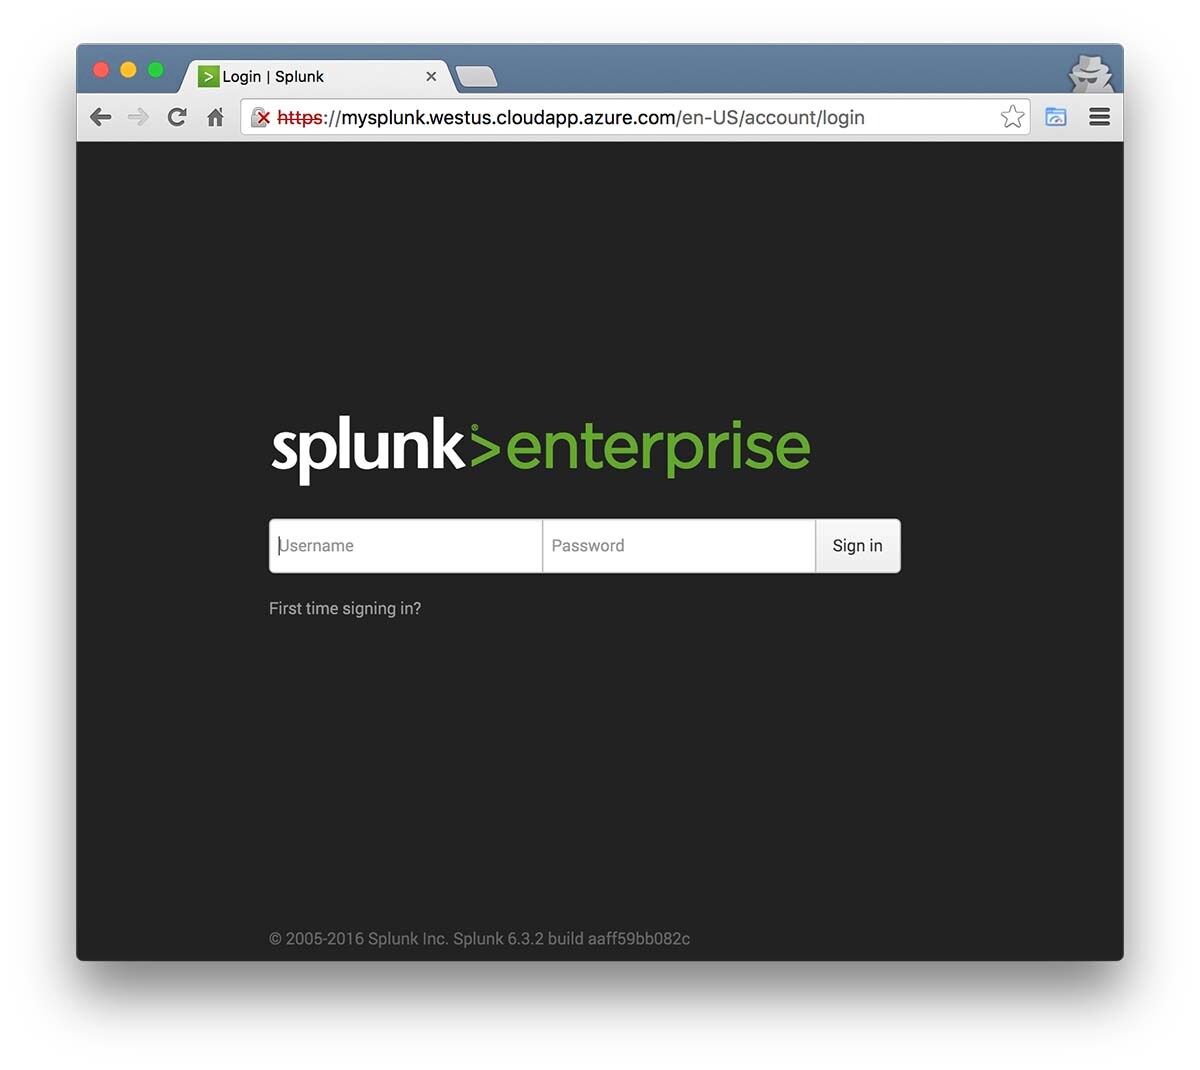 Microsoft Azure Splunk Enterprise login